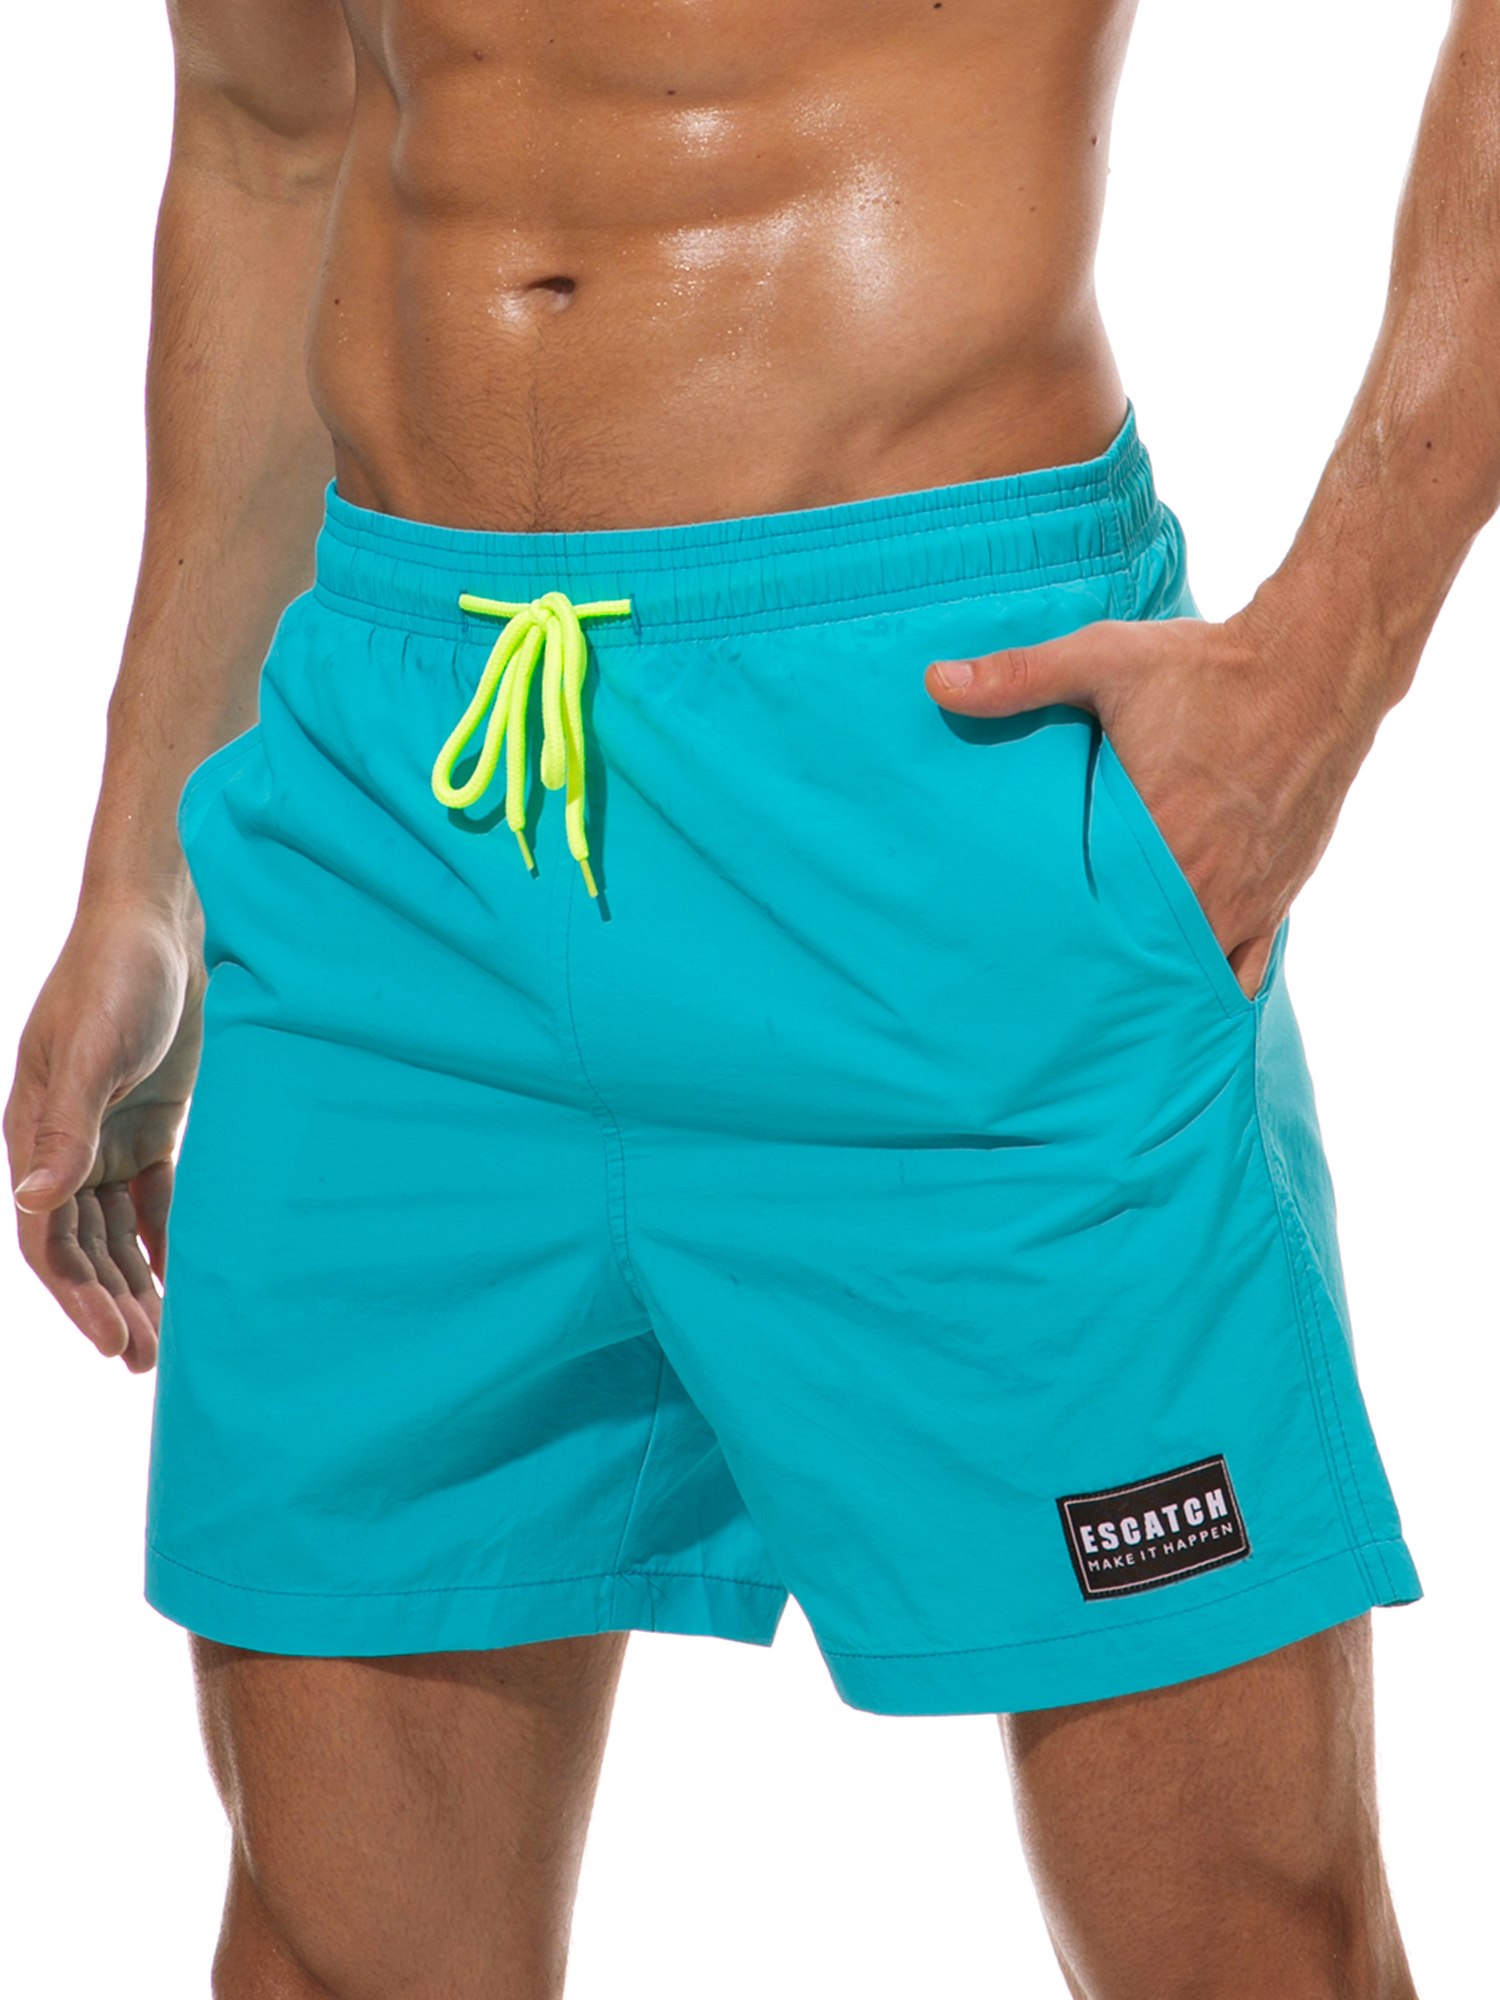 Шорты для пляжа. Kitaro men одежда шорты мужские купальные. Мужские плавательные шорты 2021. Купательные шорты Kappa мужские. Мужские шорты Flatt nylon Auxiliary Pocket Swim.